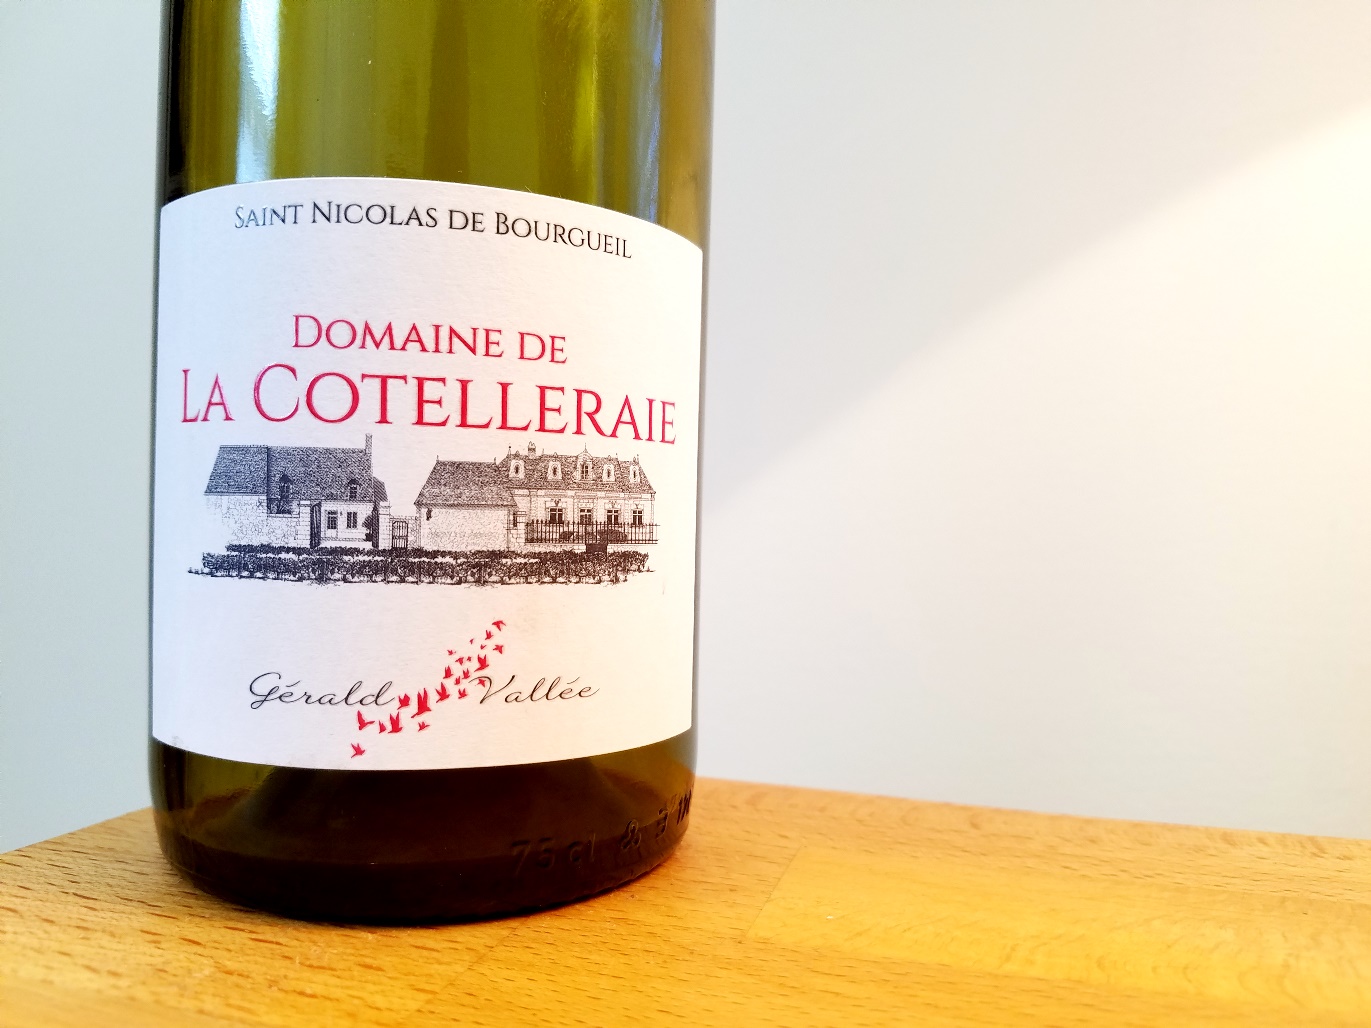 Gerald Vallée Domaine de La Cotelleraie, Saint Nicolas de Bourgueil 2017, Loire, France, Wine Casual